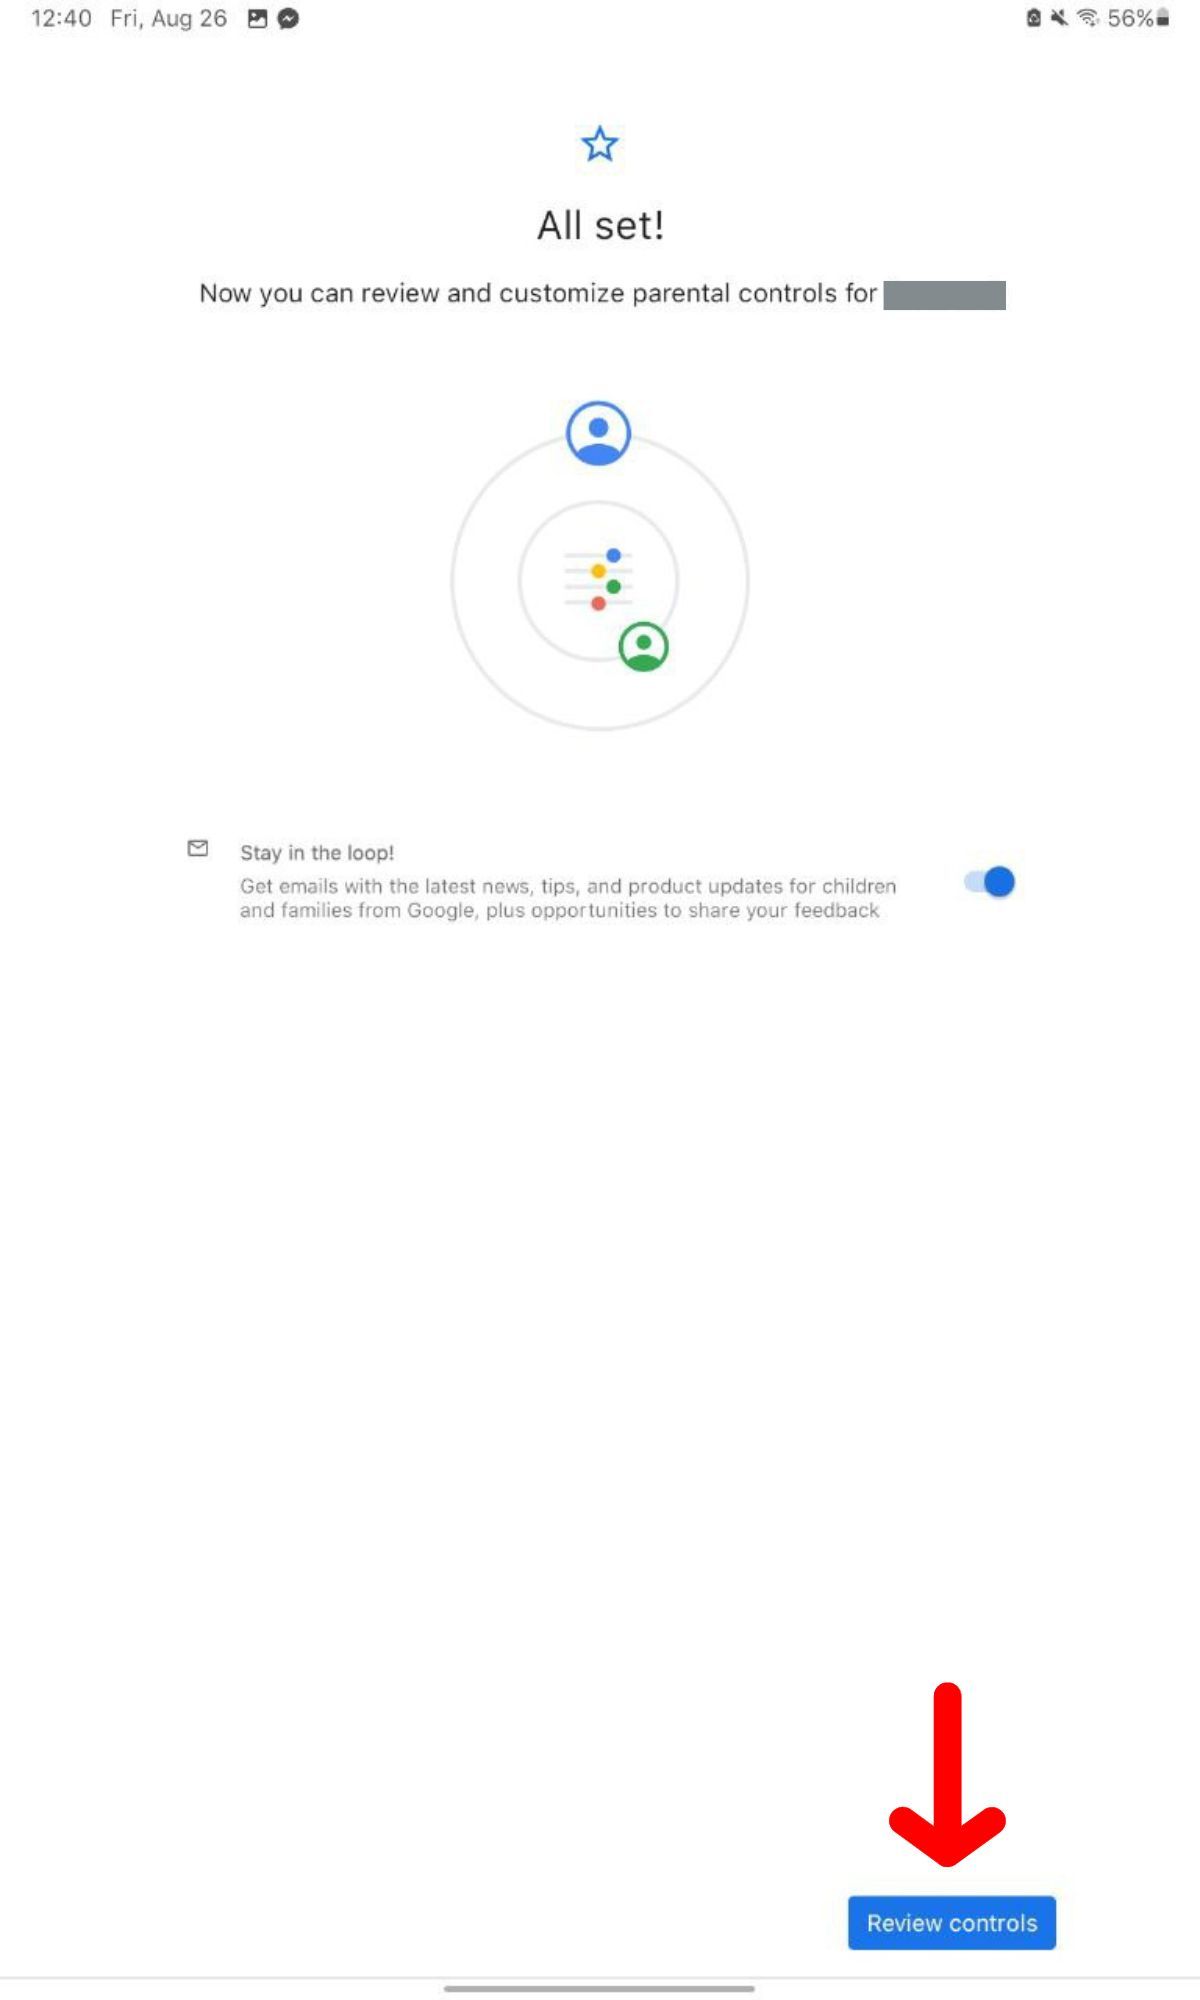 ลดปัญหาลูกติดมือถือด้วย Google Family Link กำหนดเวลาเล่น จำกัดการเข้าแอปได้ง่าย ๆ เช็คได้ผ่านมือถือ